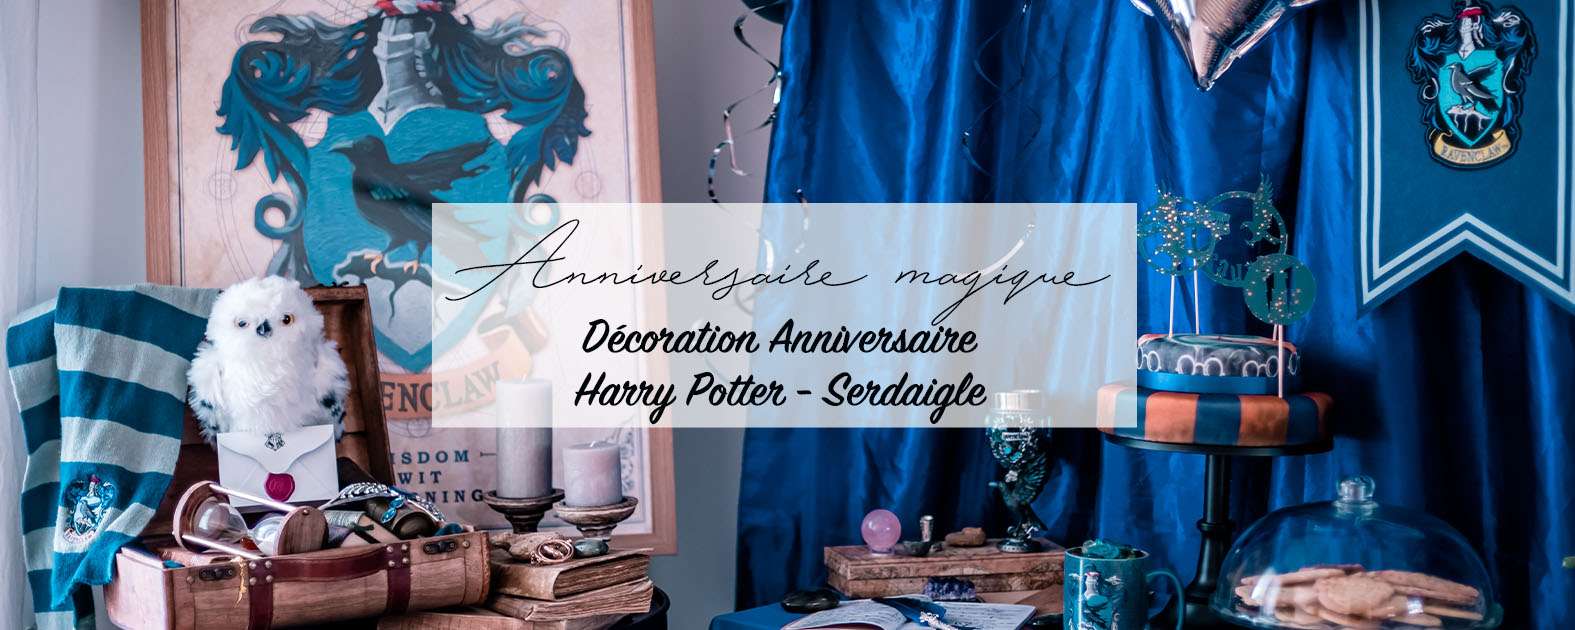 Harry Potter Party : 10 idées déco pour dresser une table magique